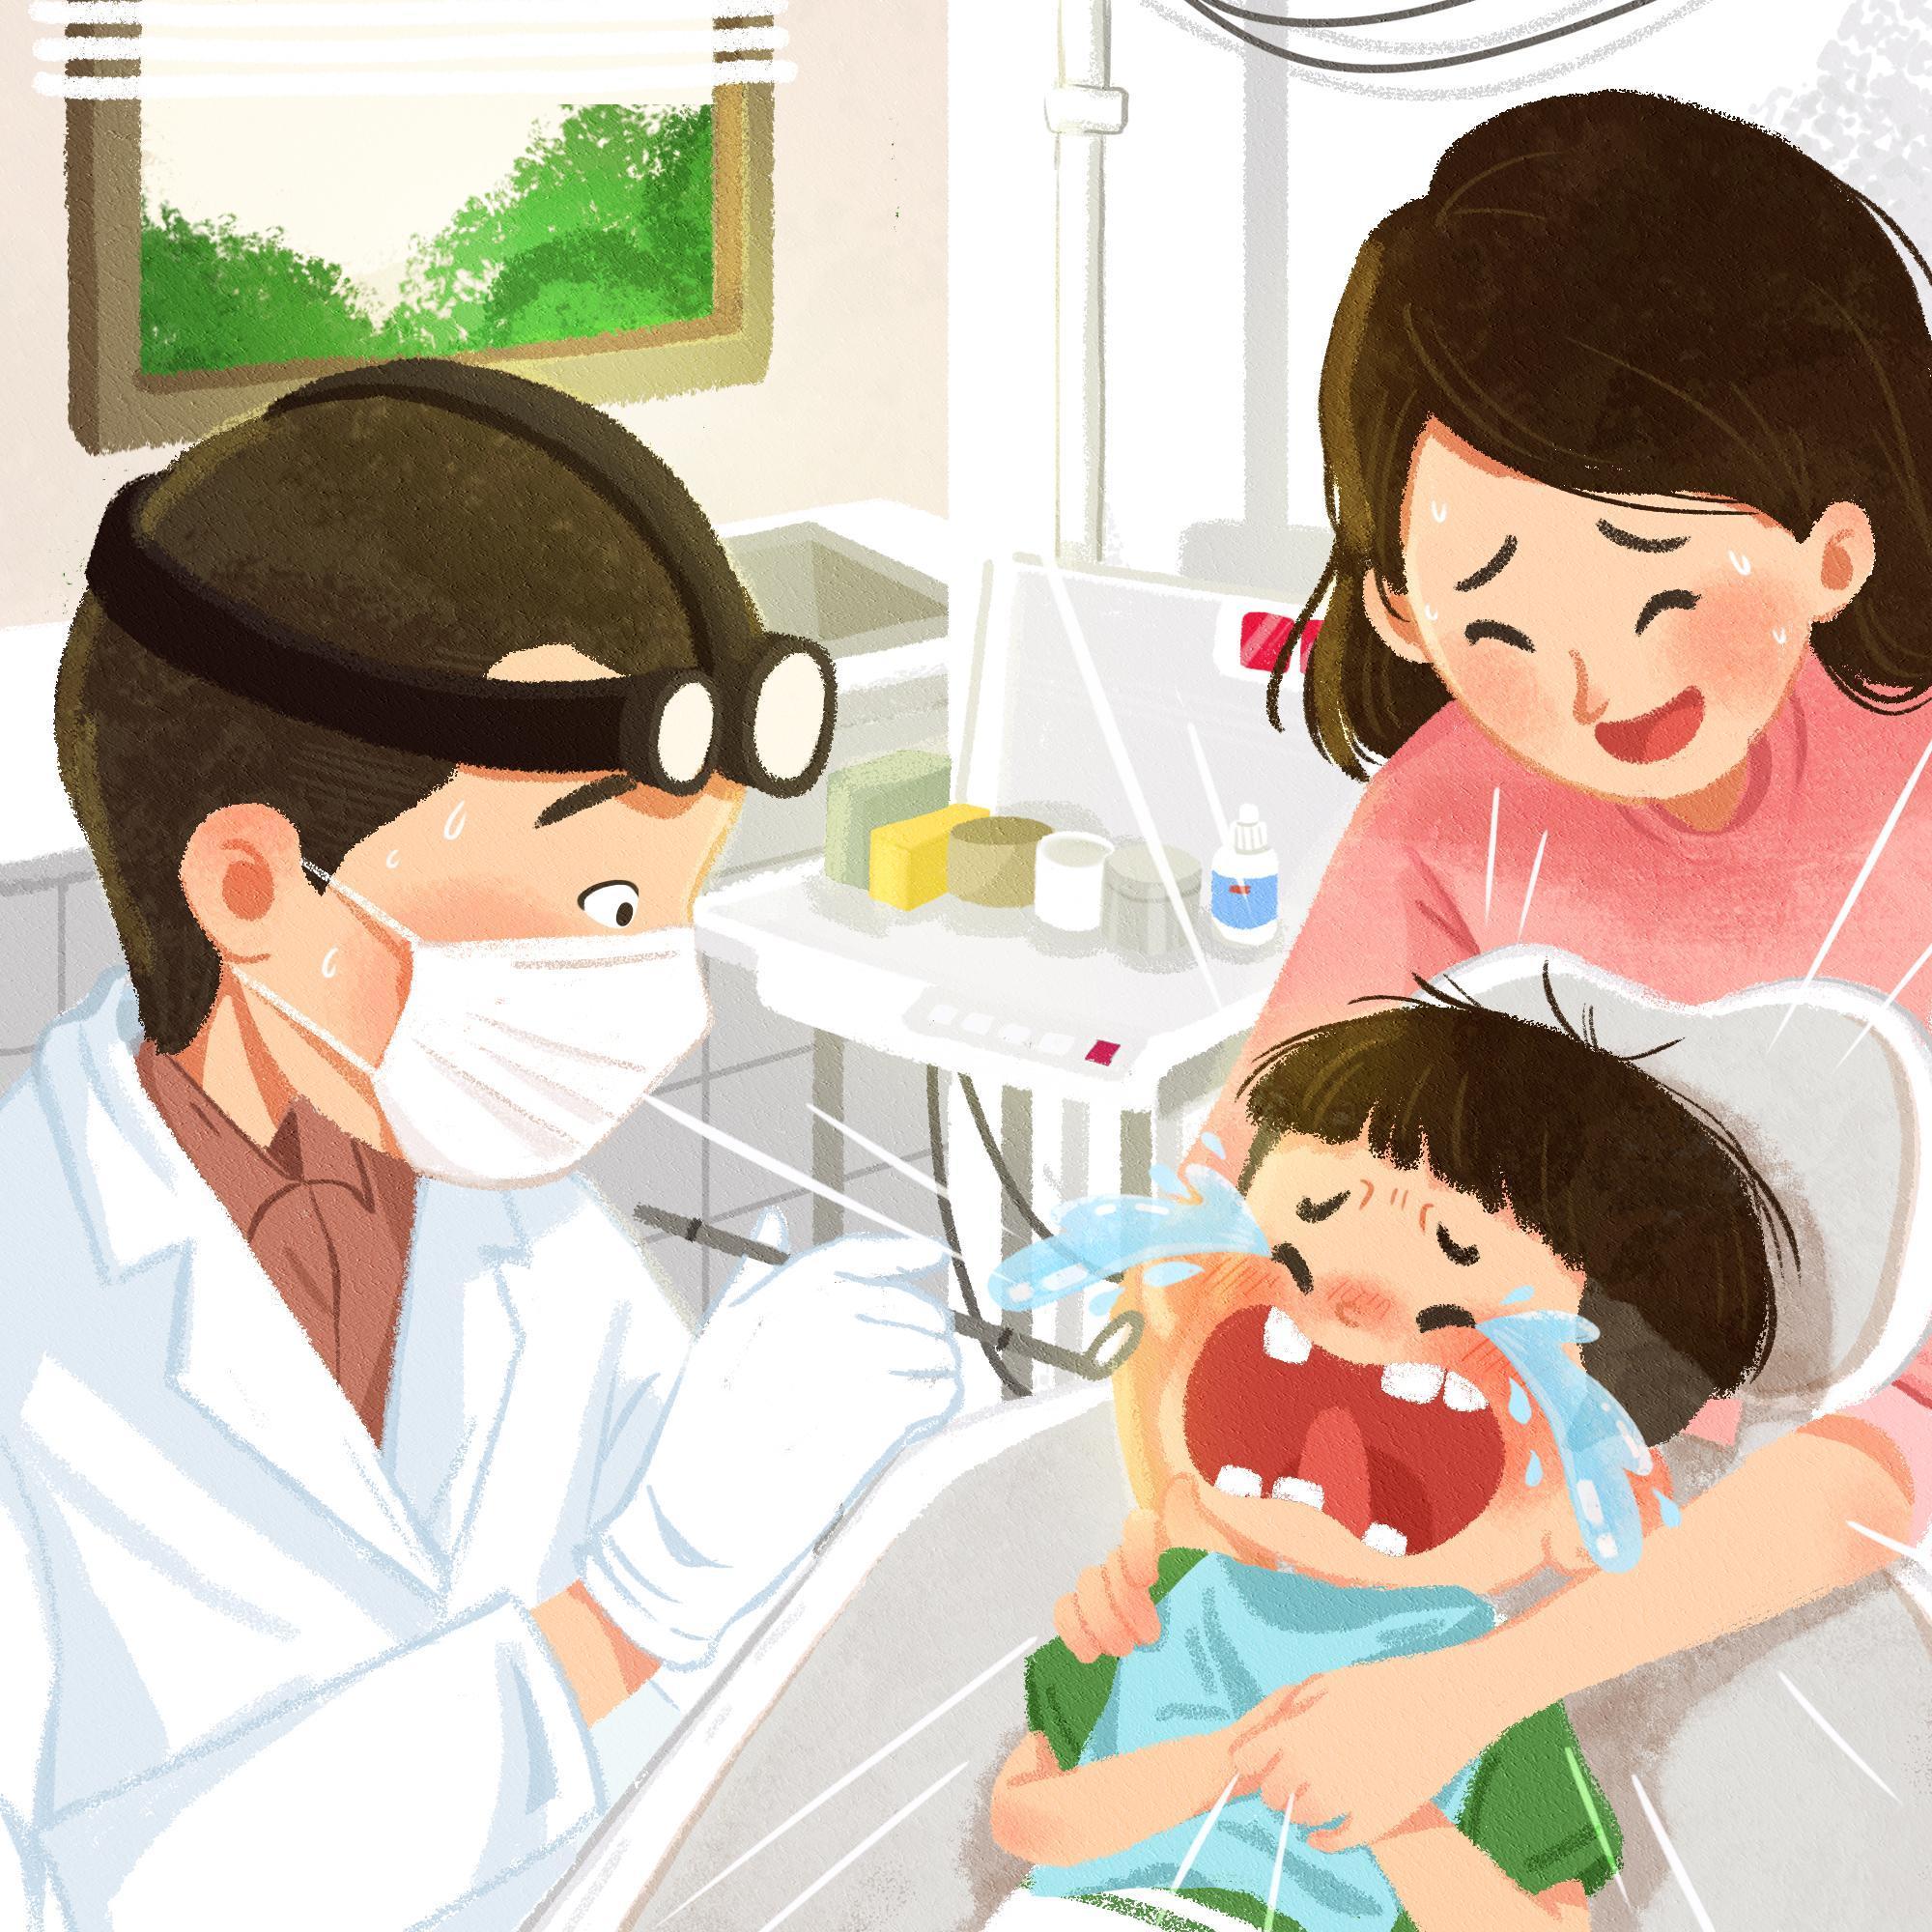 “Lúc ở nhà mẹ cũng là nha sĩ” - Bộ tranh gây bão vì loạt kỷ niệm răng lợi quá đáng yêu của gia đình - Ảnh 3.